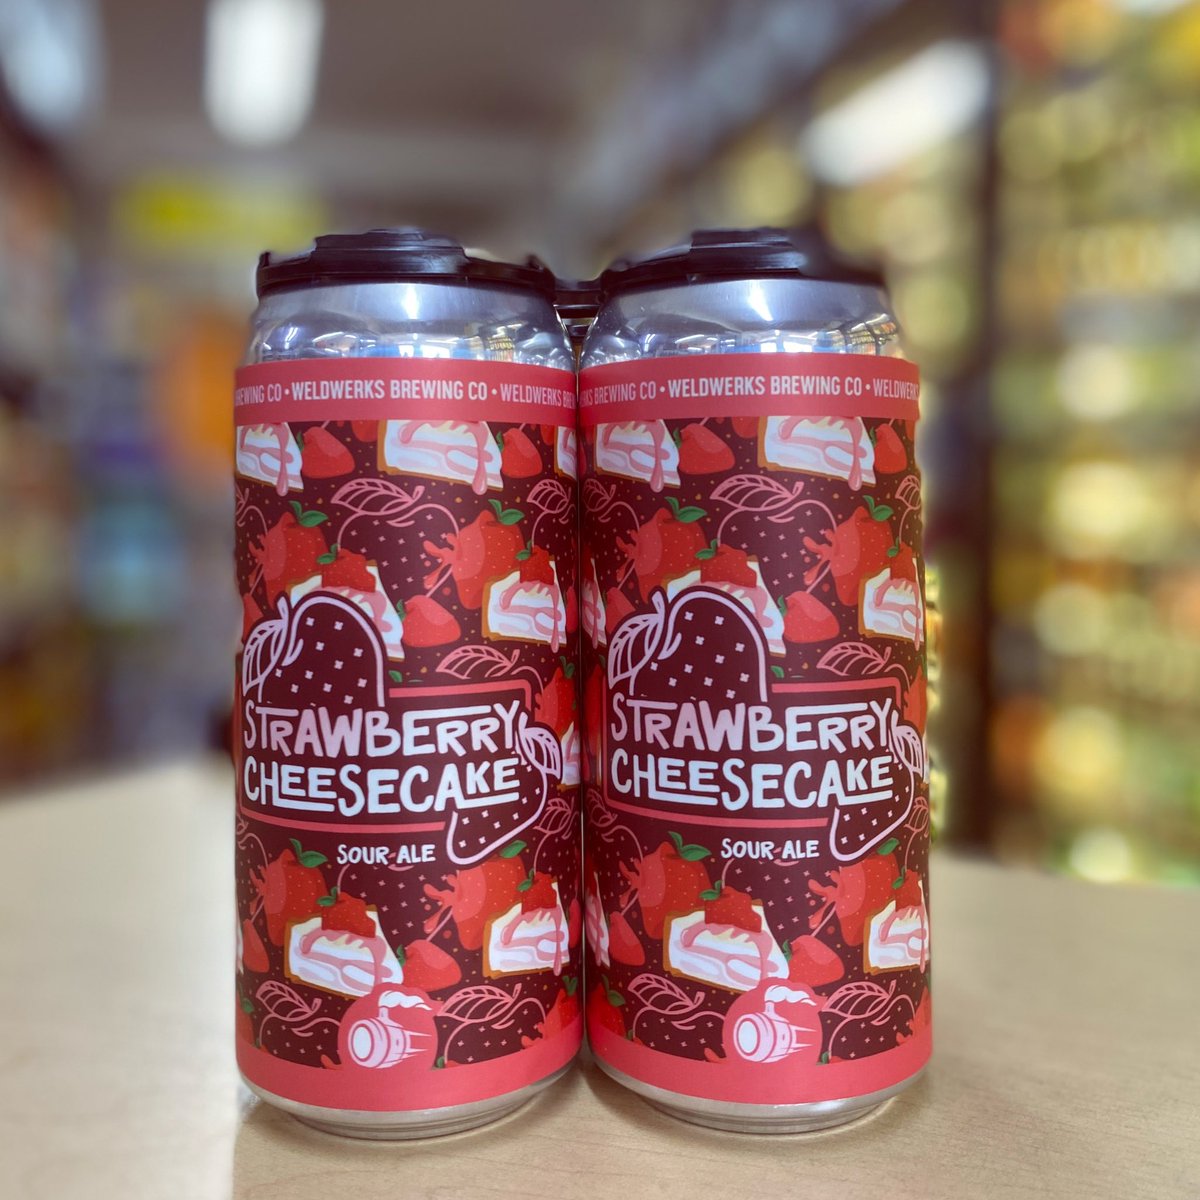 Strawberry Cheesecake Sour Ale🍰

@WeldWerksBrewCo 

#newbeer #beergoals #craftbeer #goodbeer #beervibes #beeroclock #weldwerksbrewing